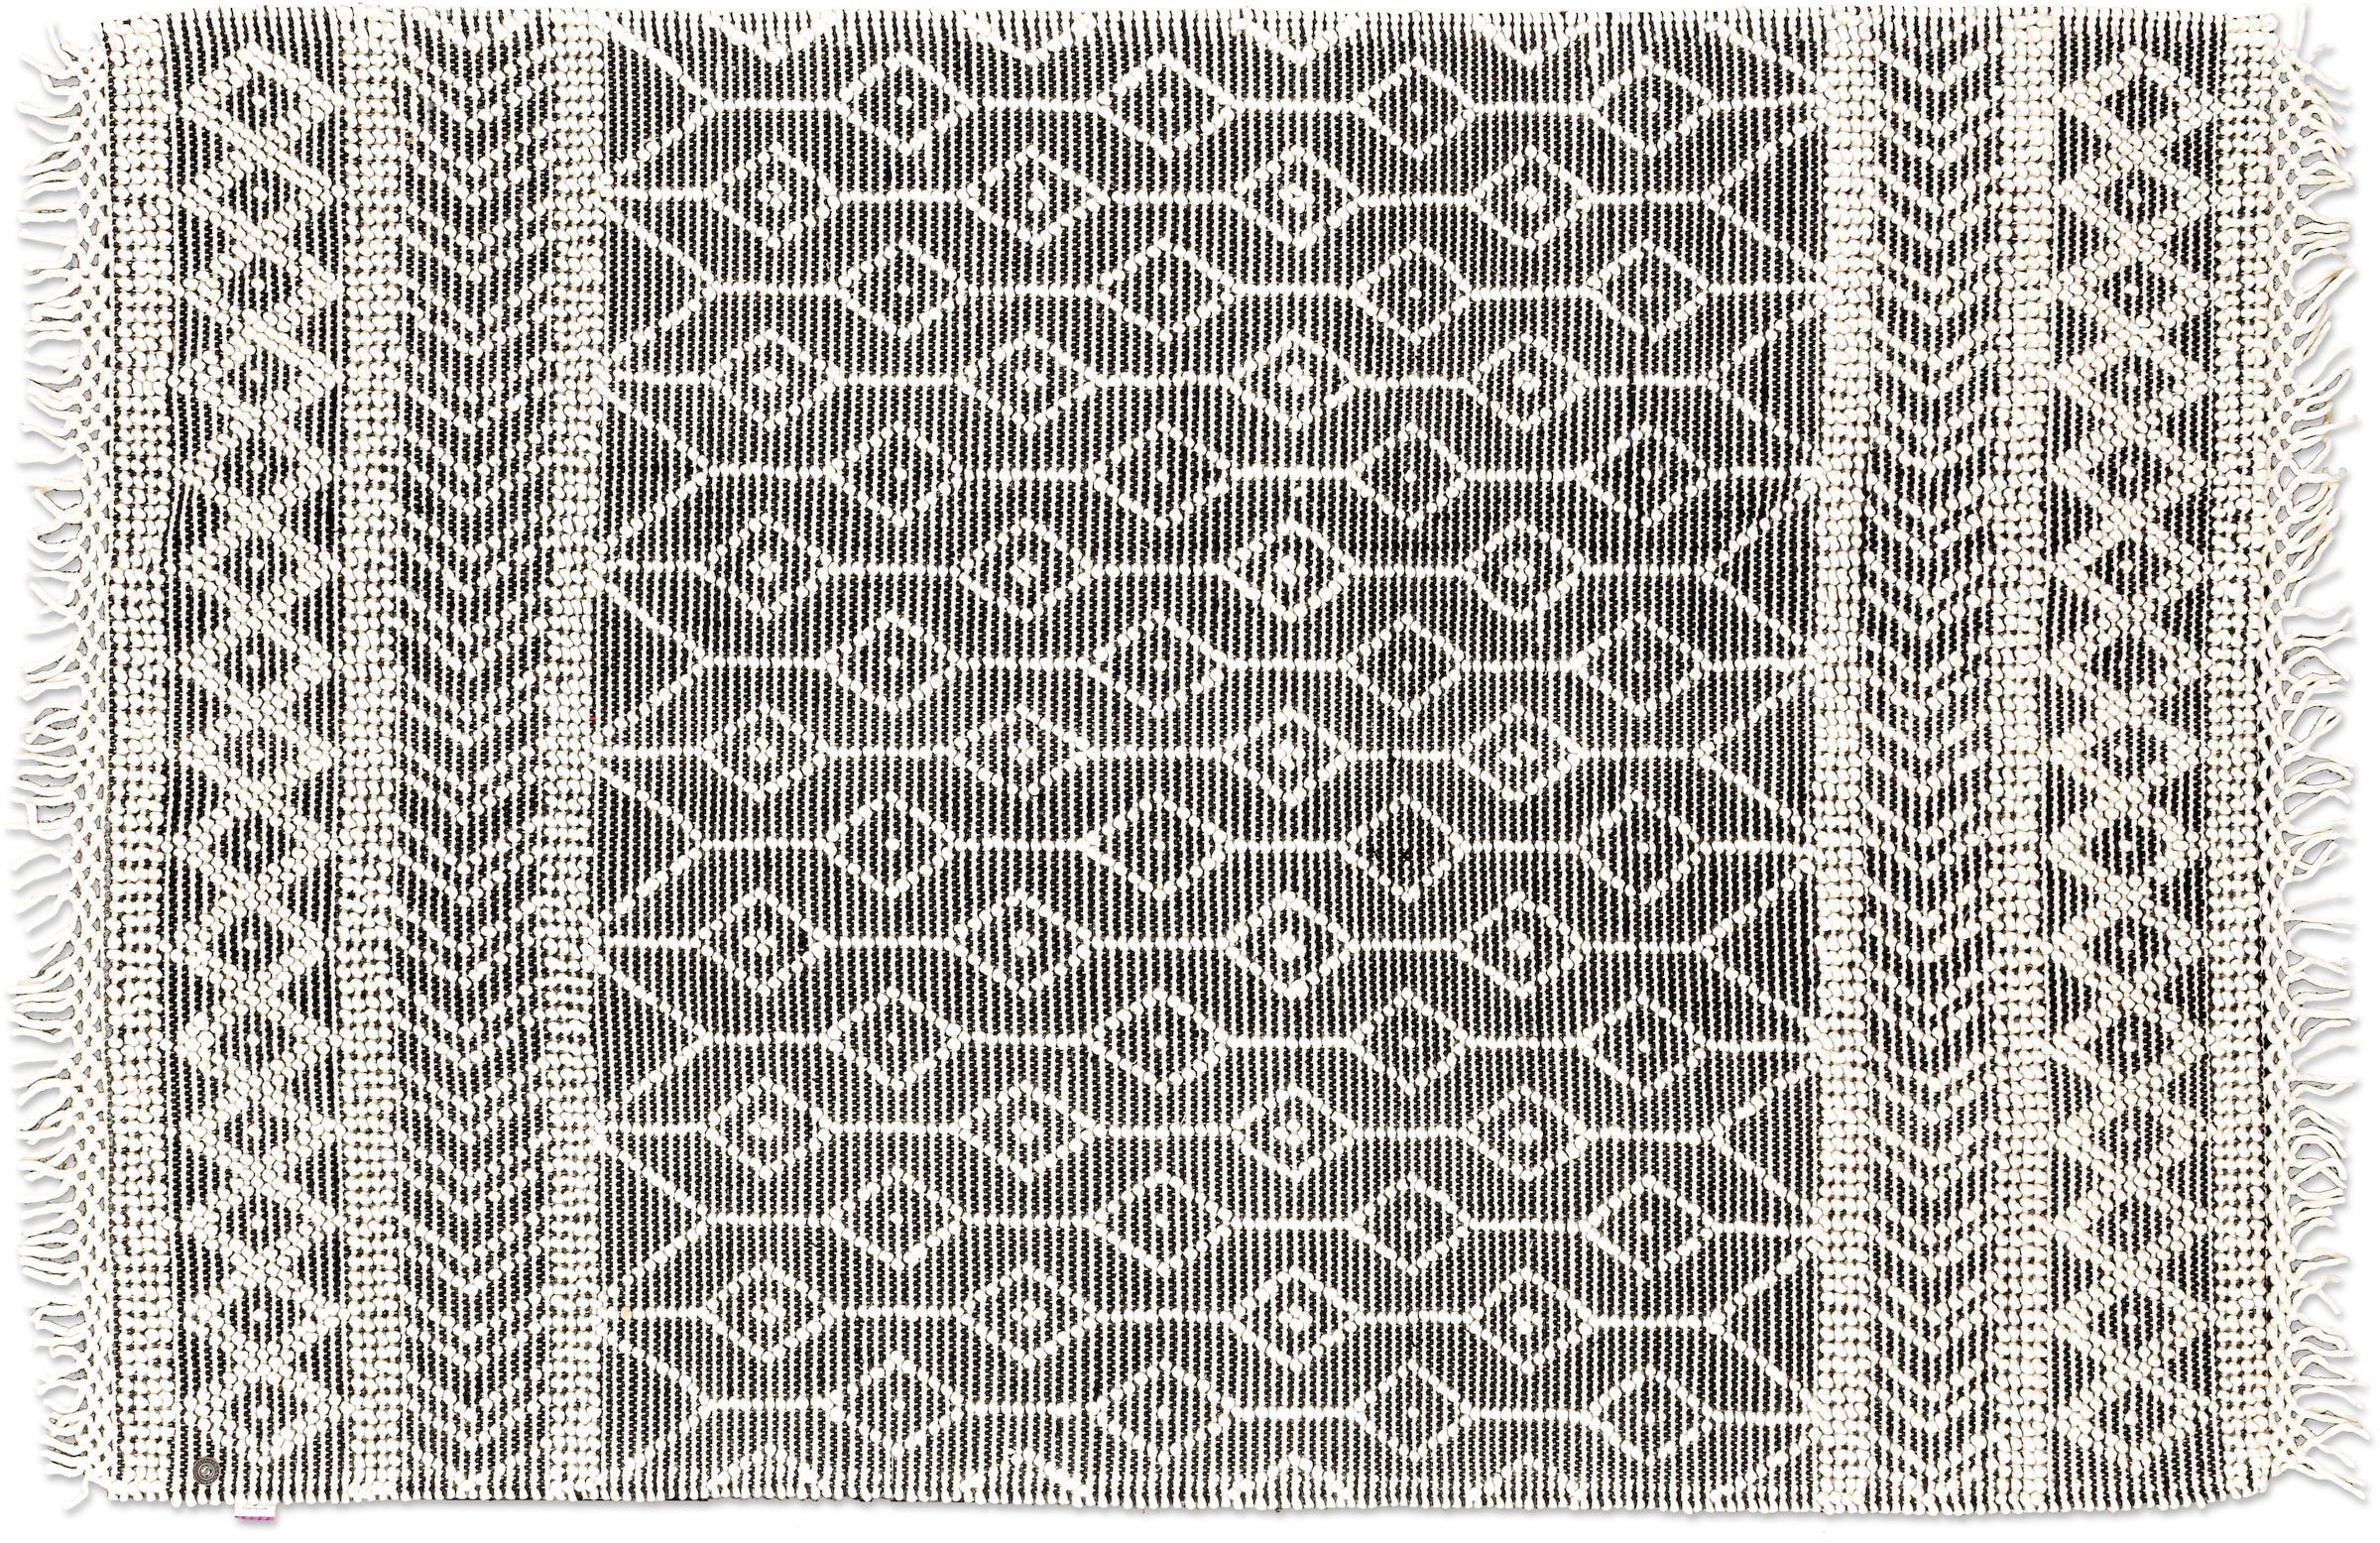 TOM TAILOR HOME Teppich »Colored Macrame«, rechteckig, Handweb Teppich, reine Wolle, handgewebt, mit Fransen, Scandi Design